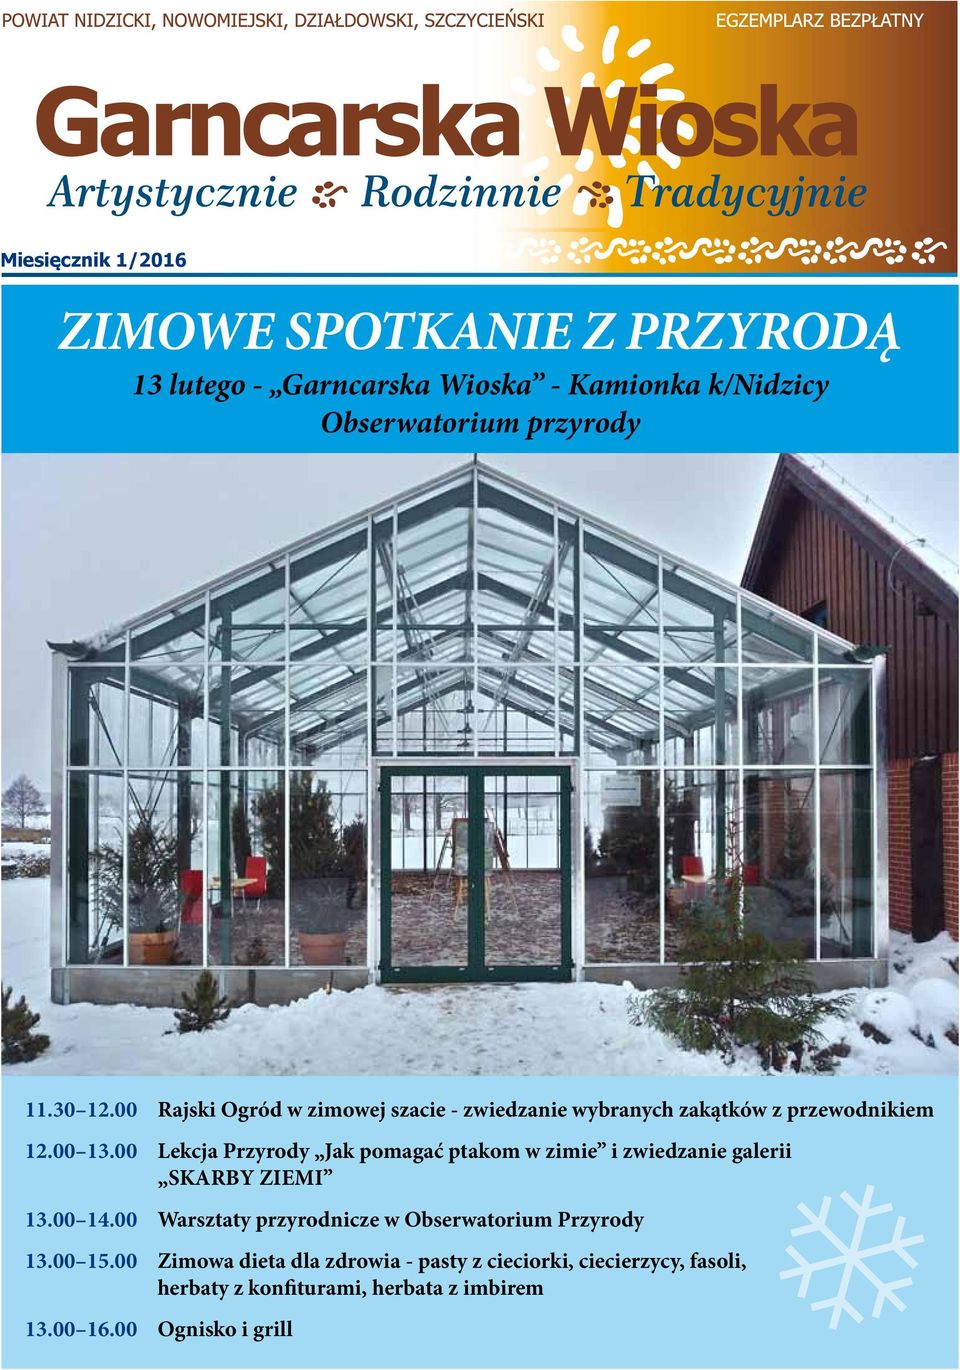 00 Lekcja Przyrody Jak pomagać ptakom w zimie i zwiedzanie galerii SKARBY ZIEMI 13.00 14.